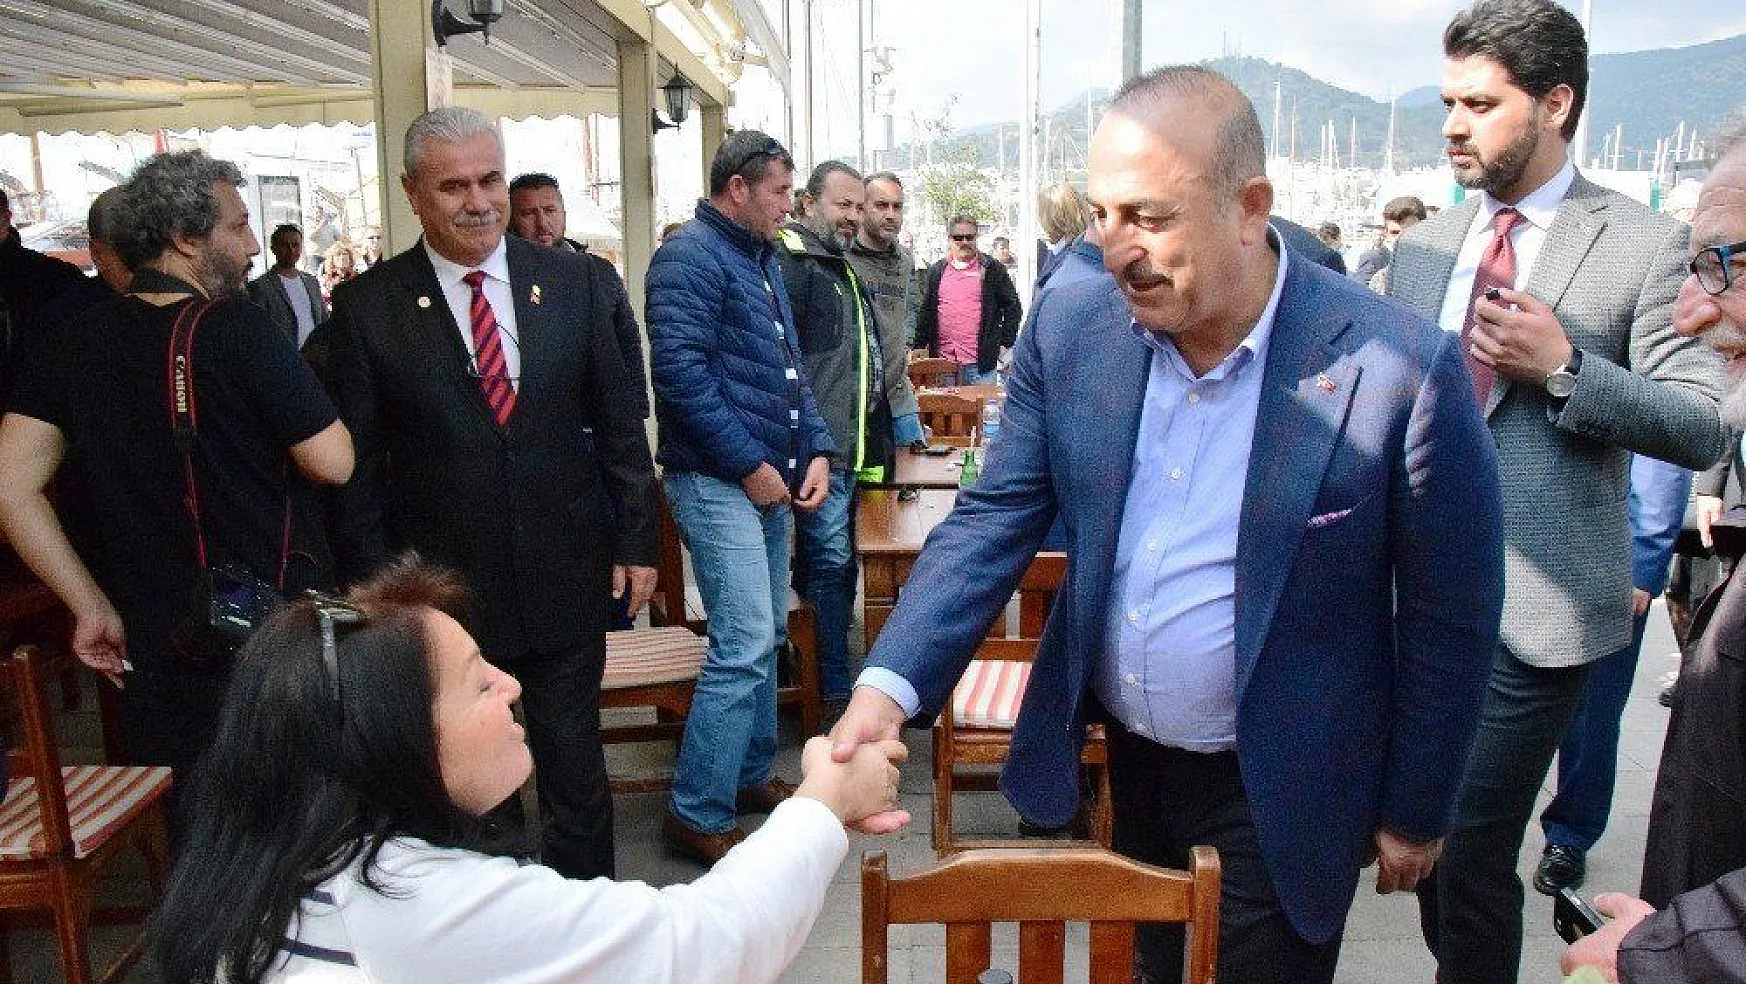 Dışişleri Bakanı Çavuşoğlu, Bodrum'da karşılaştığı Japon turistle ana dili gibi Japonca konuştu